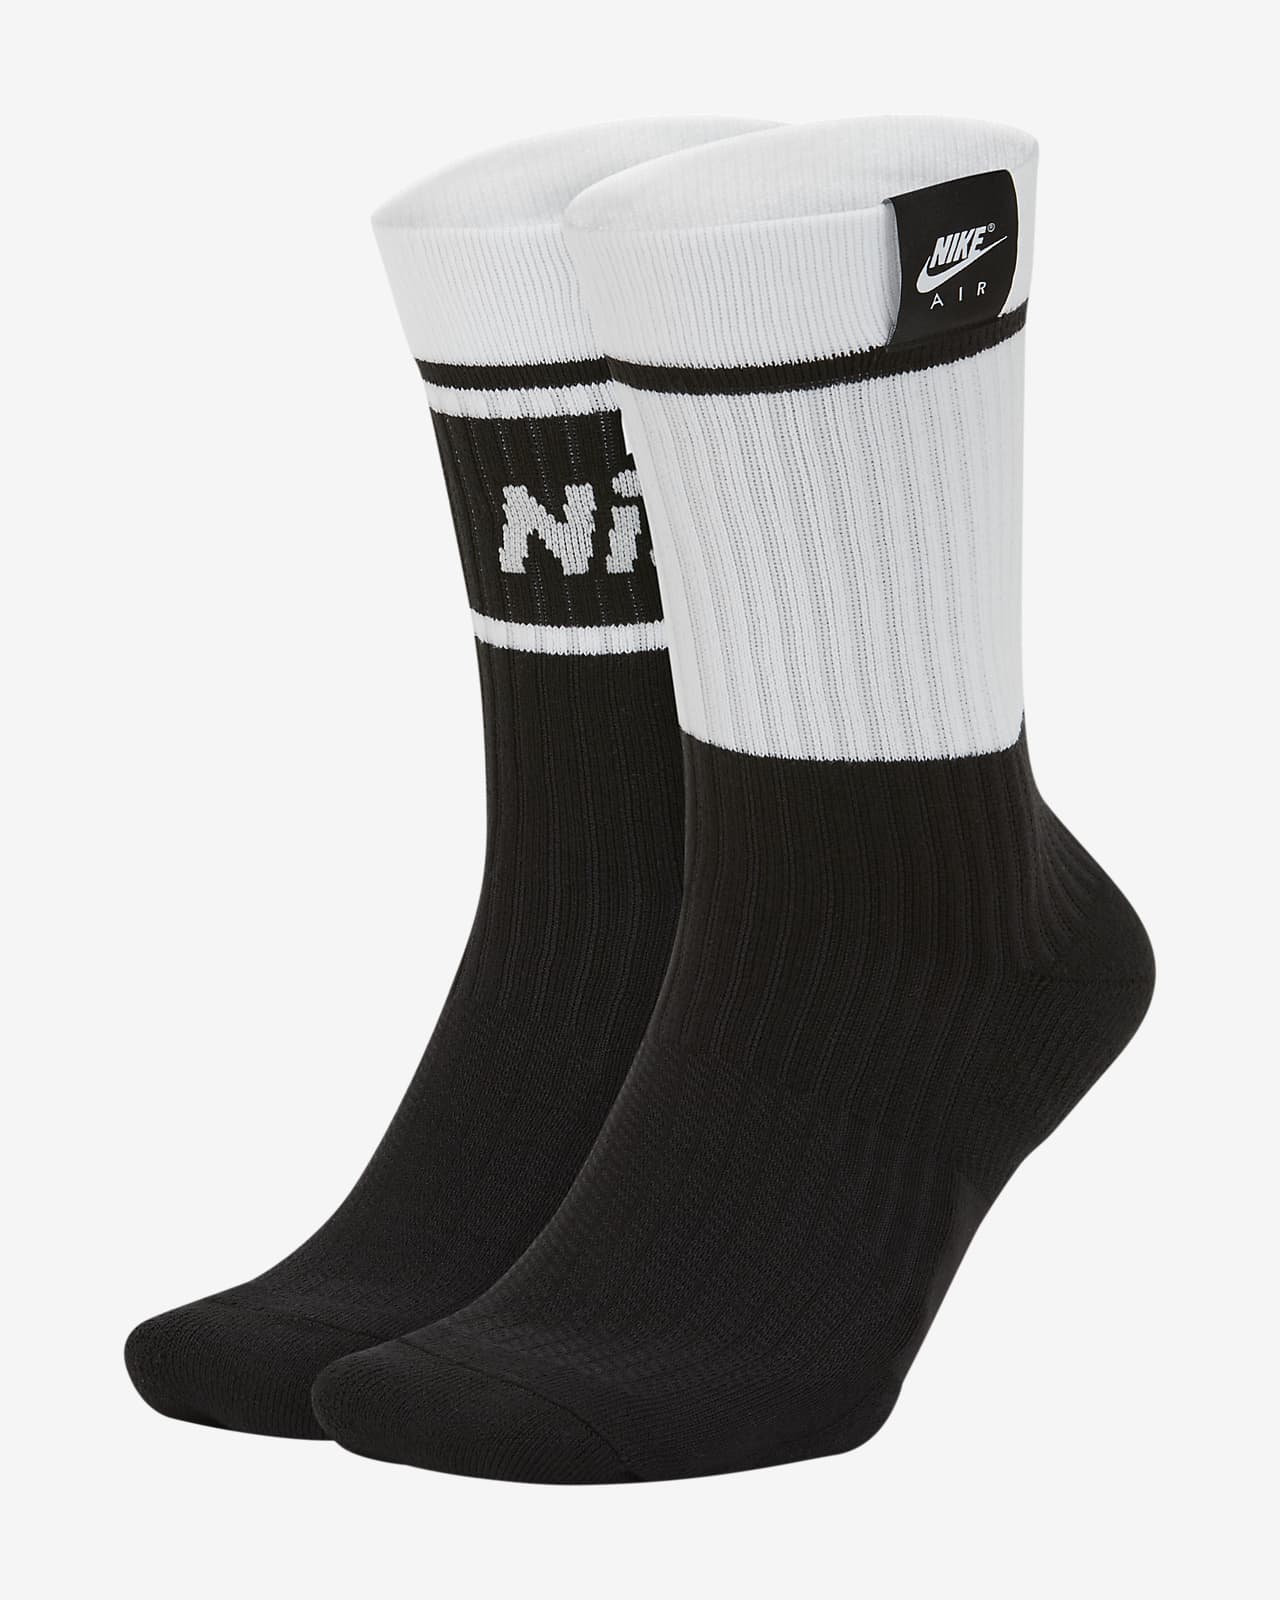 Calcetines deportivos Nike Air SNKR Sox (2 pares). Nike.com